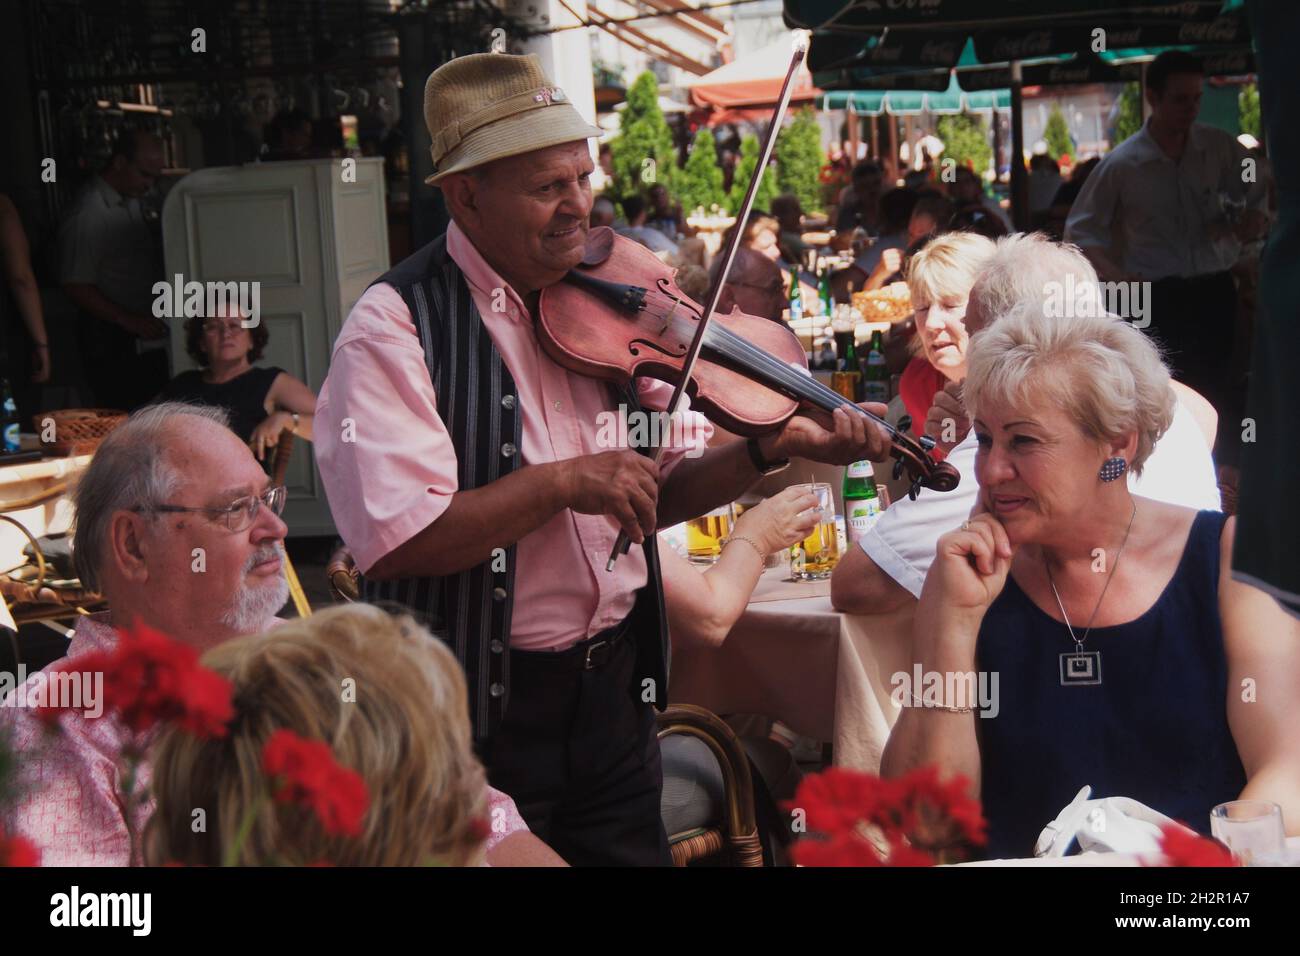 Ungarn, Budapest, Cafés und Restaurants am Duna-korzó auf der Pestseite der Donau, Musiker spielt auf der Geige ungarische Musik | Hungary, Budapest, Stock Photo